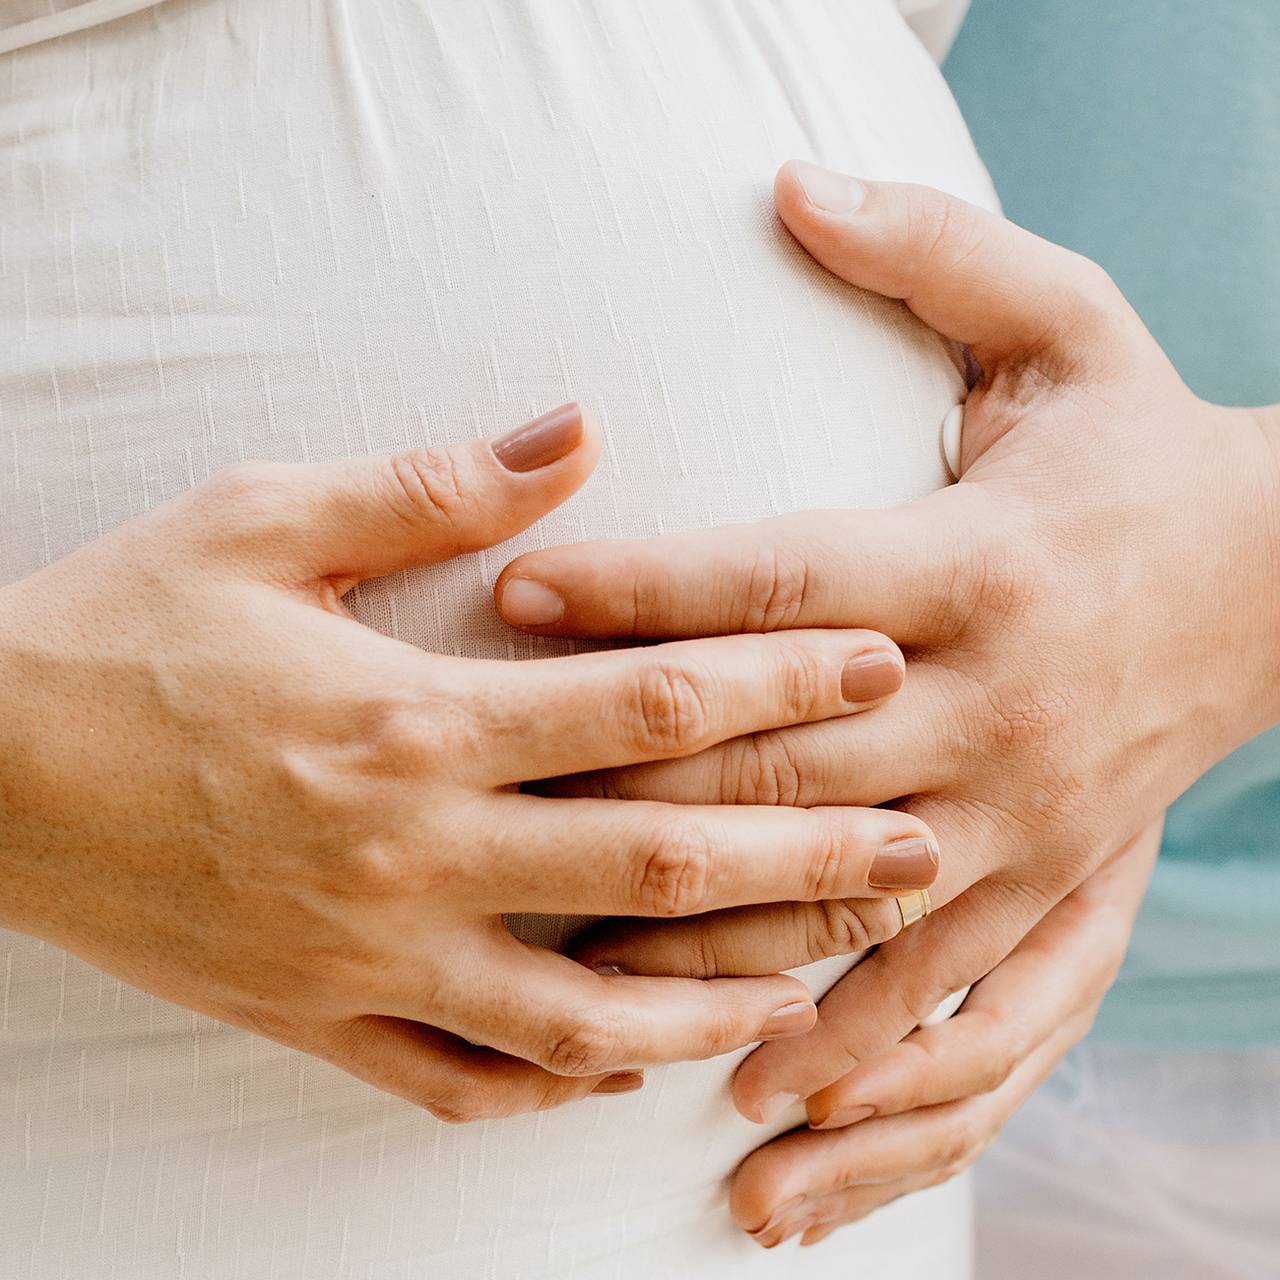 Секс во время беременности – польза или вред для мамы и малыша?